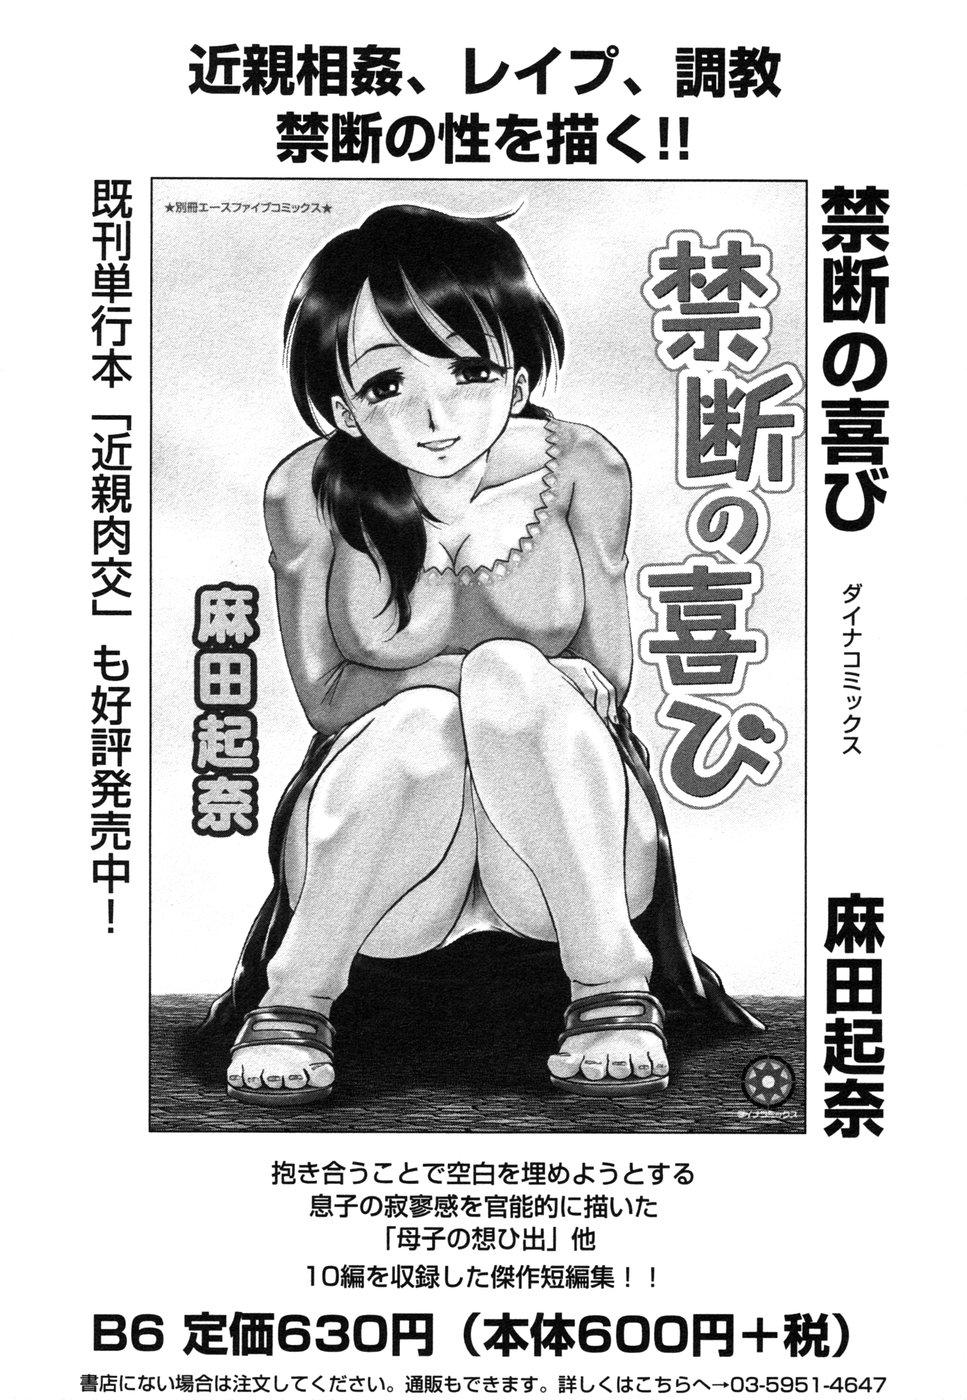 Himitsu no Tobira 5 Kinshin Ai Anthology 180